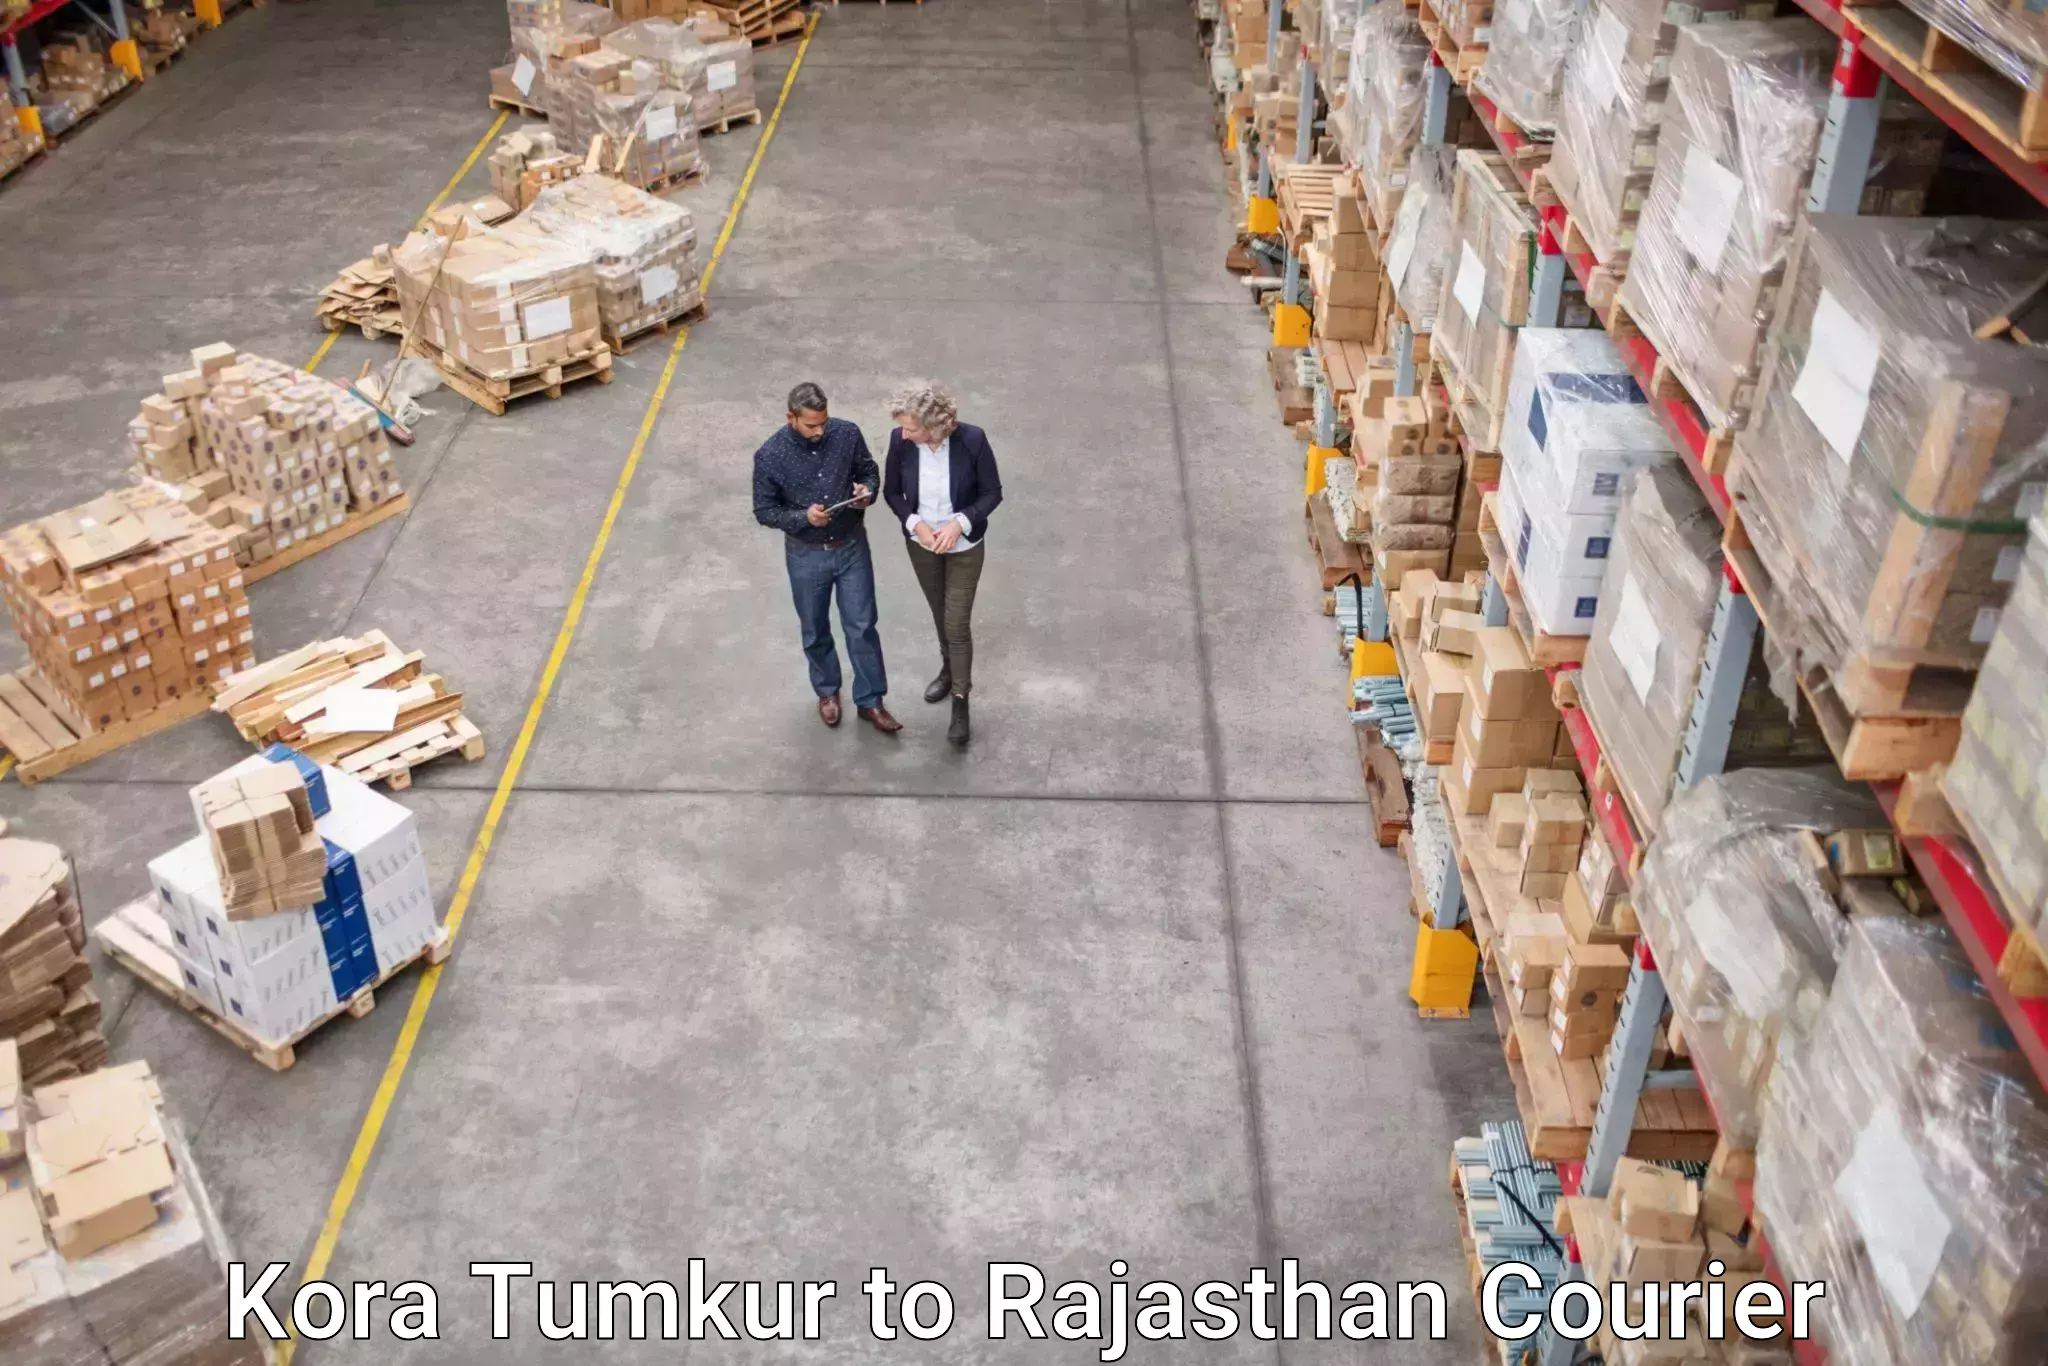 Shipping and handling Kora Tumkur to Laxmangarh